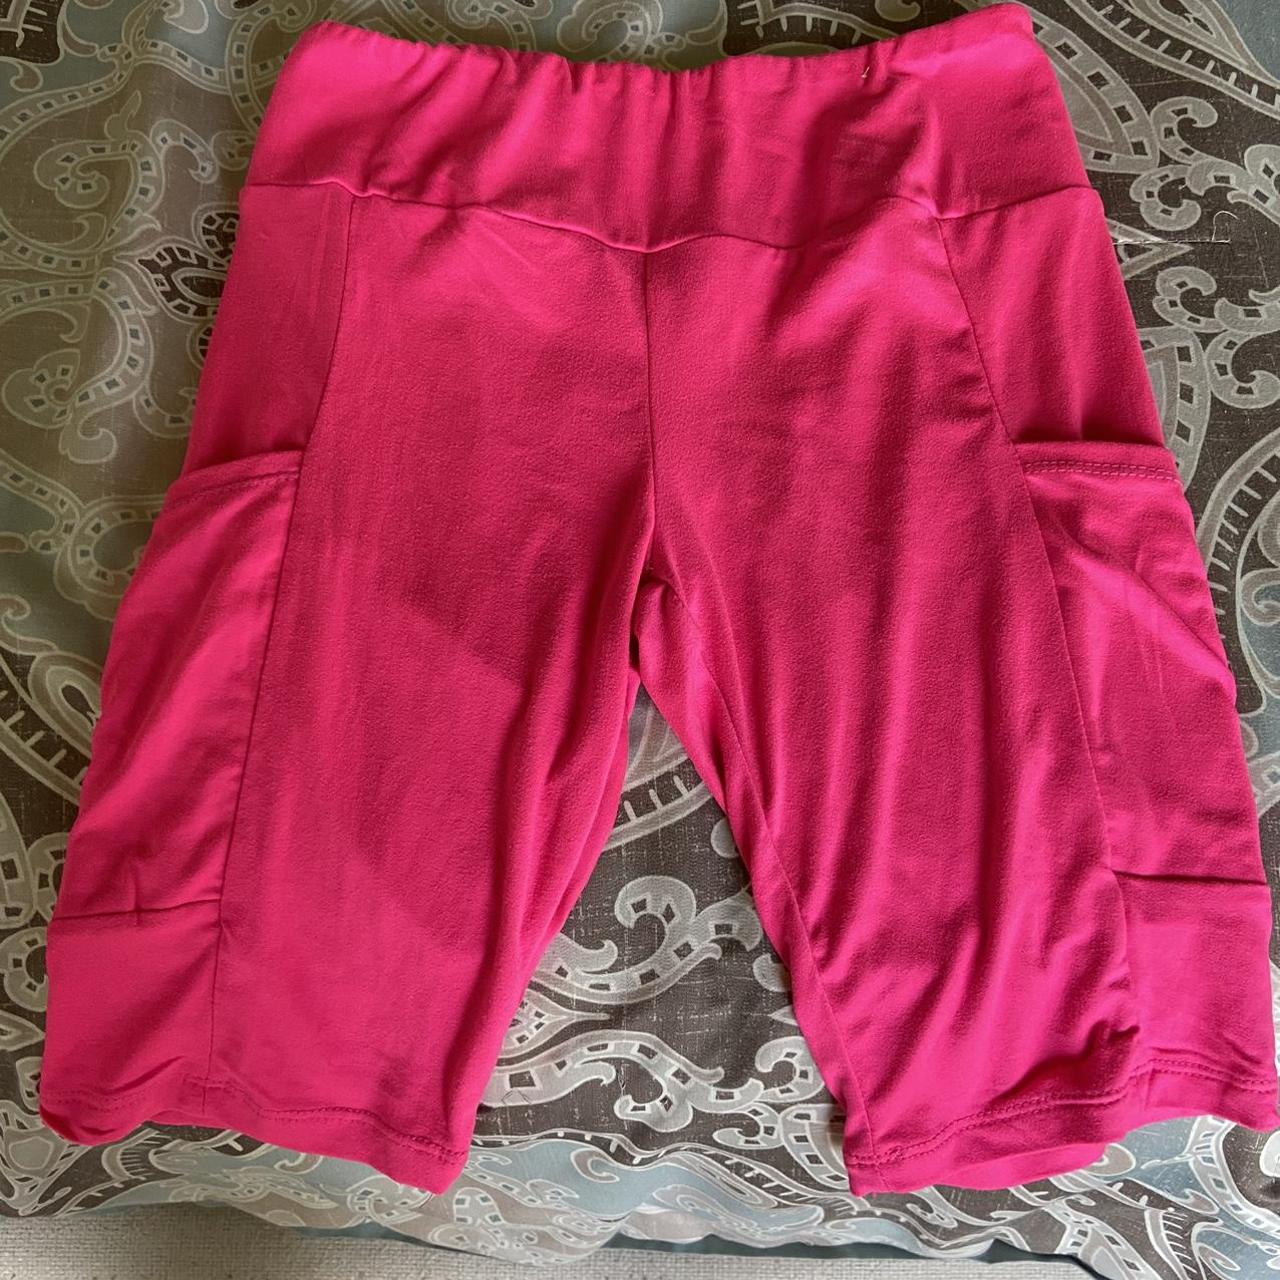 hot pink biker shorts - Depop